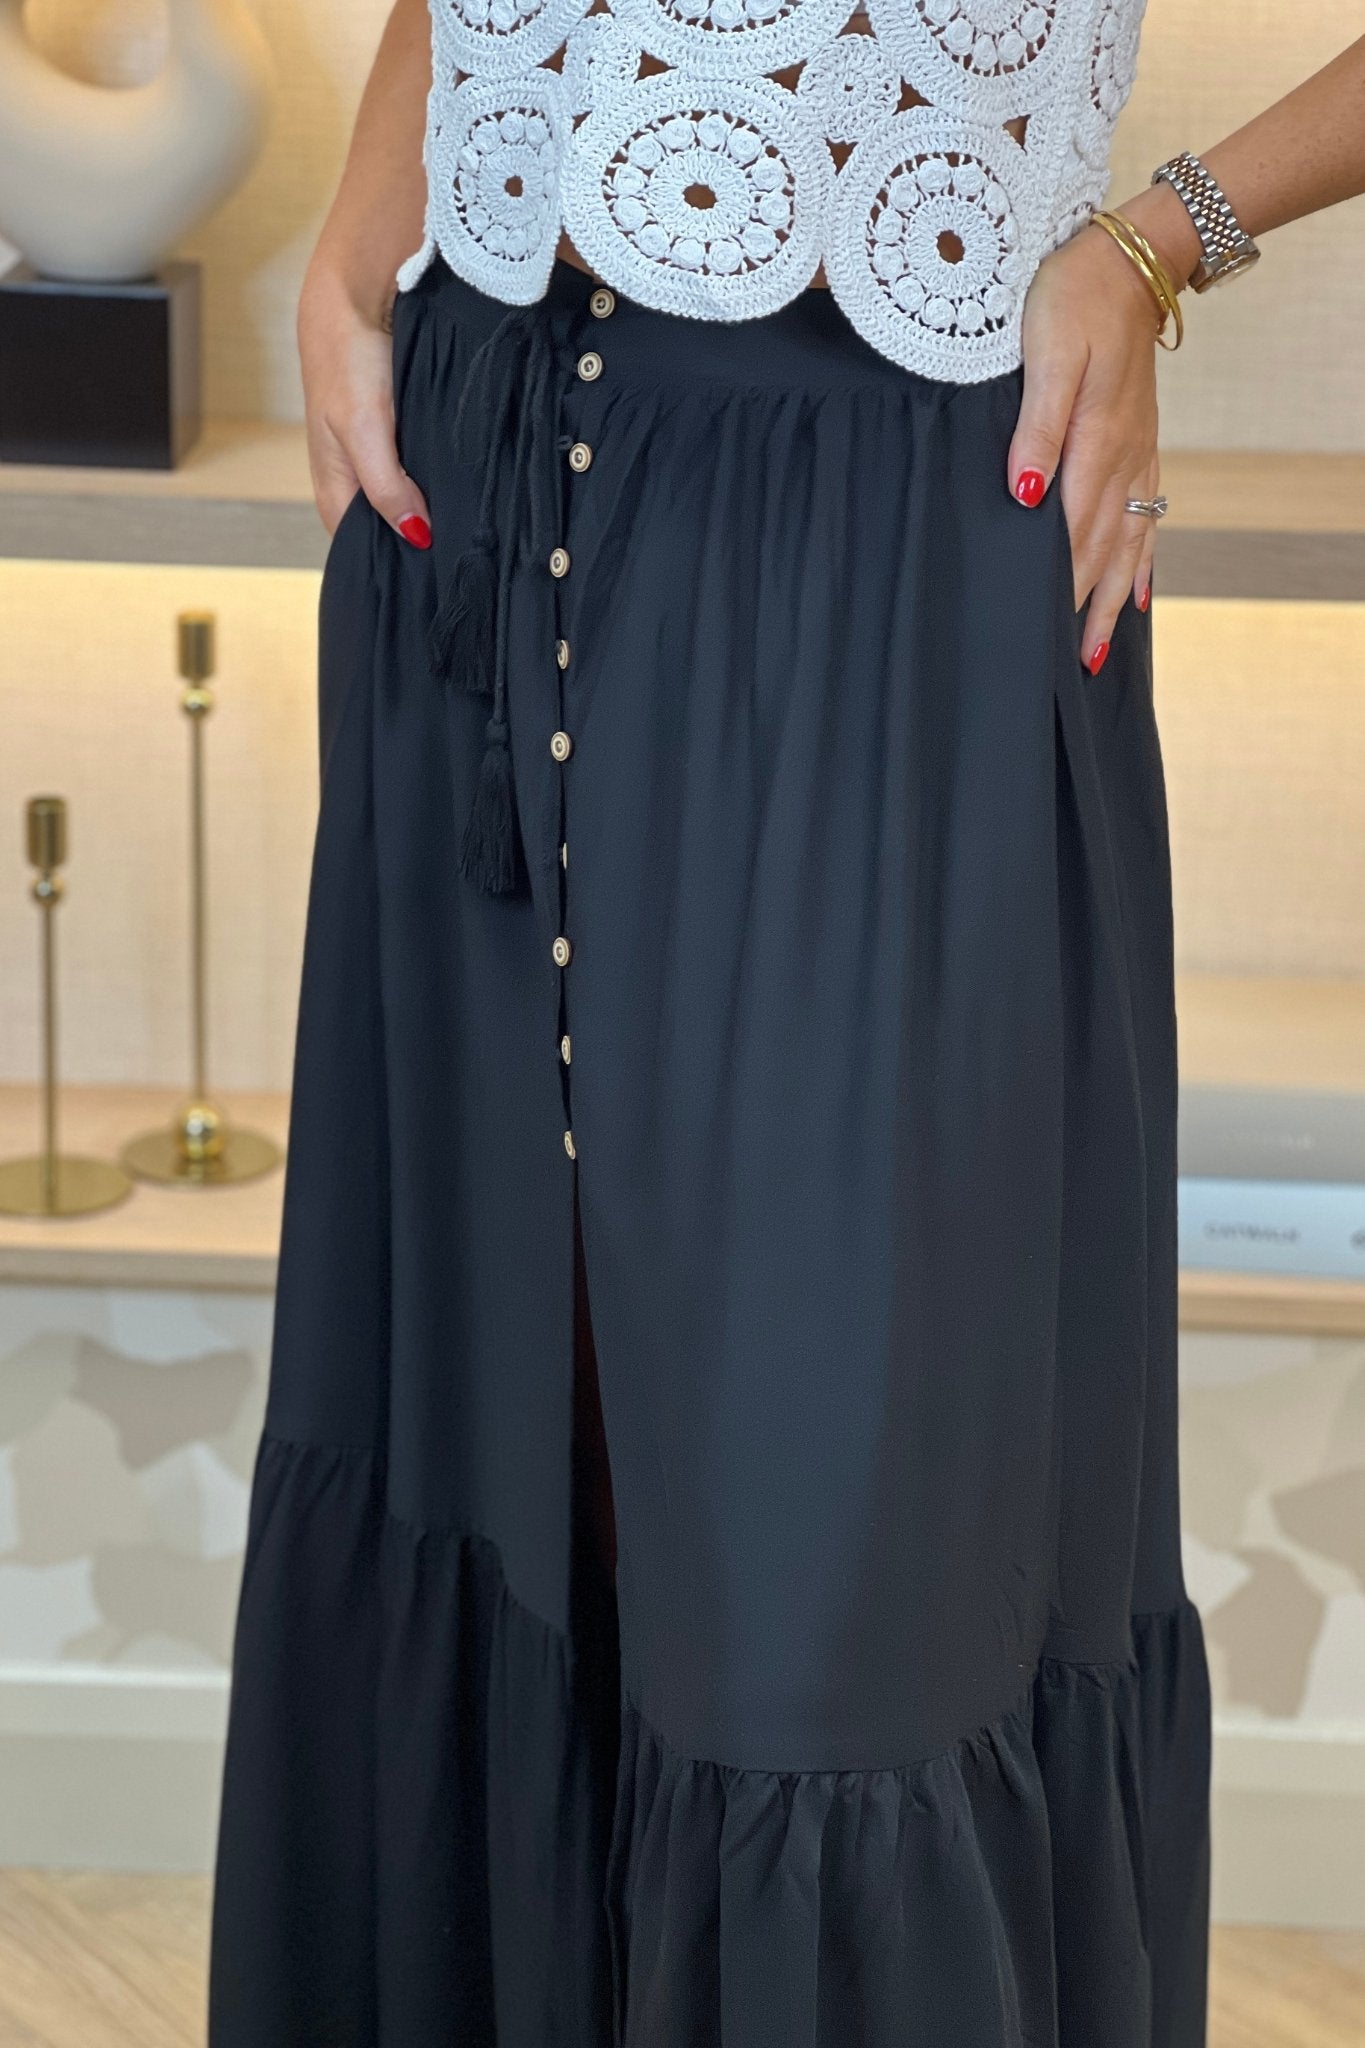 Beca Midi Skirt In Black - The Walk in Wardrobe